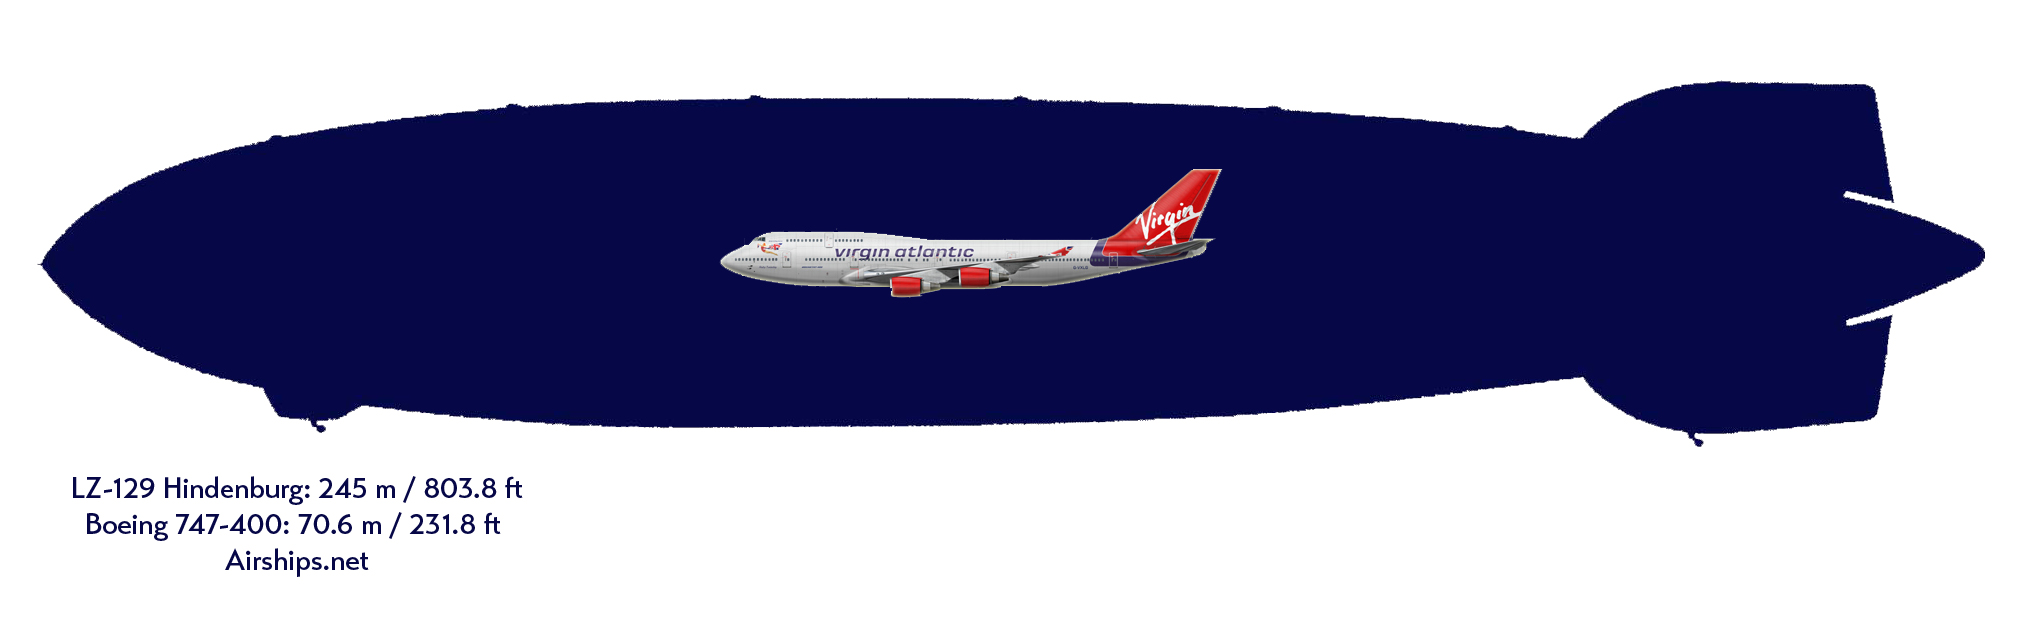 hindenburg-747-comparison.jpg